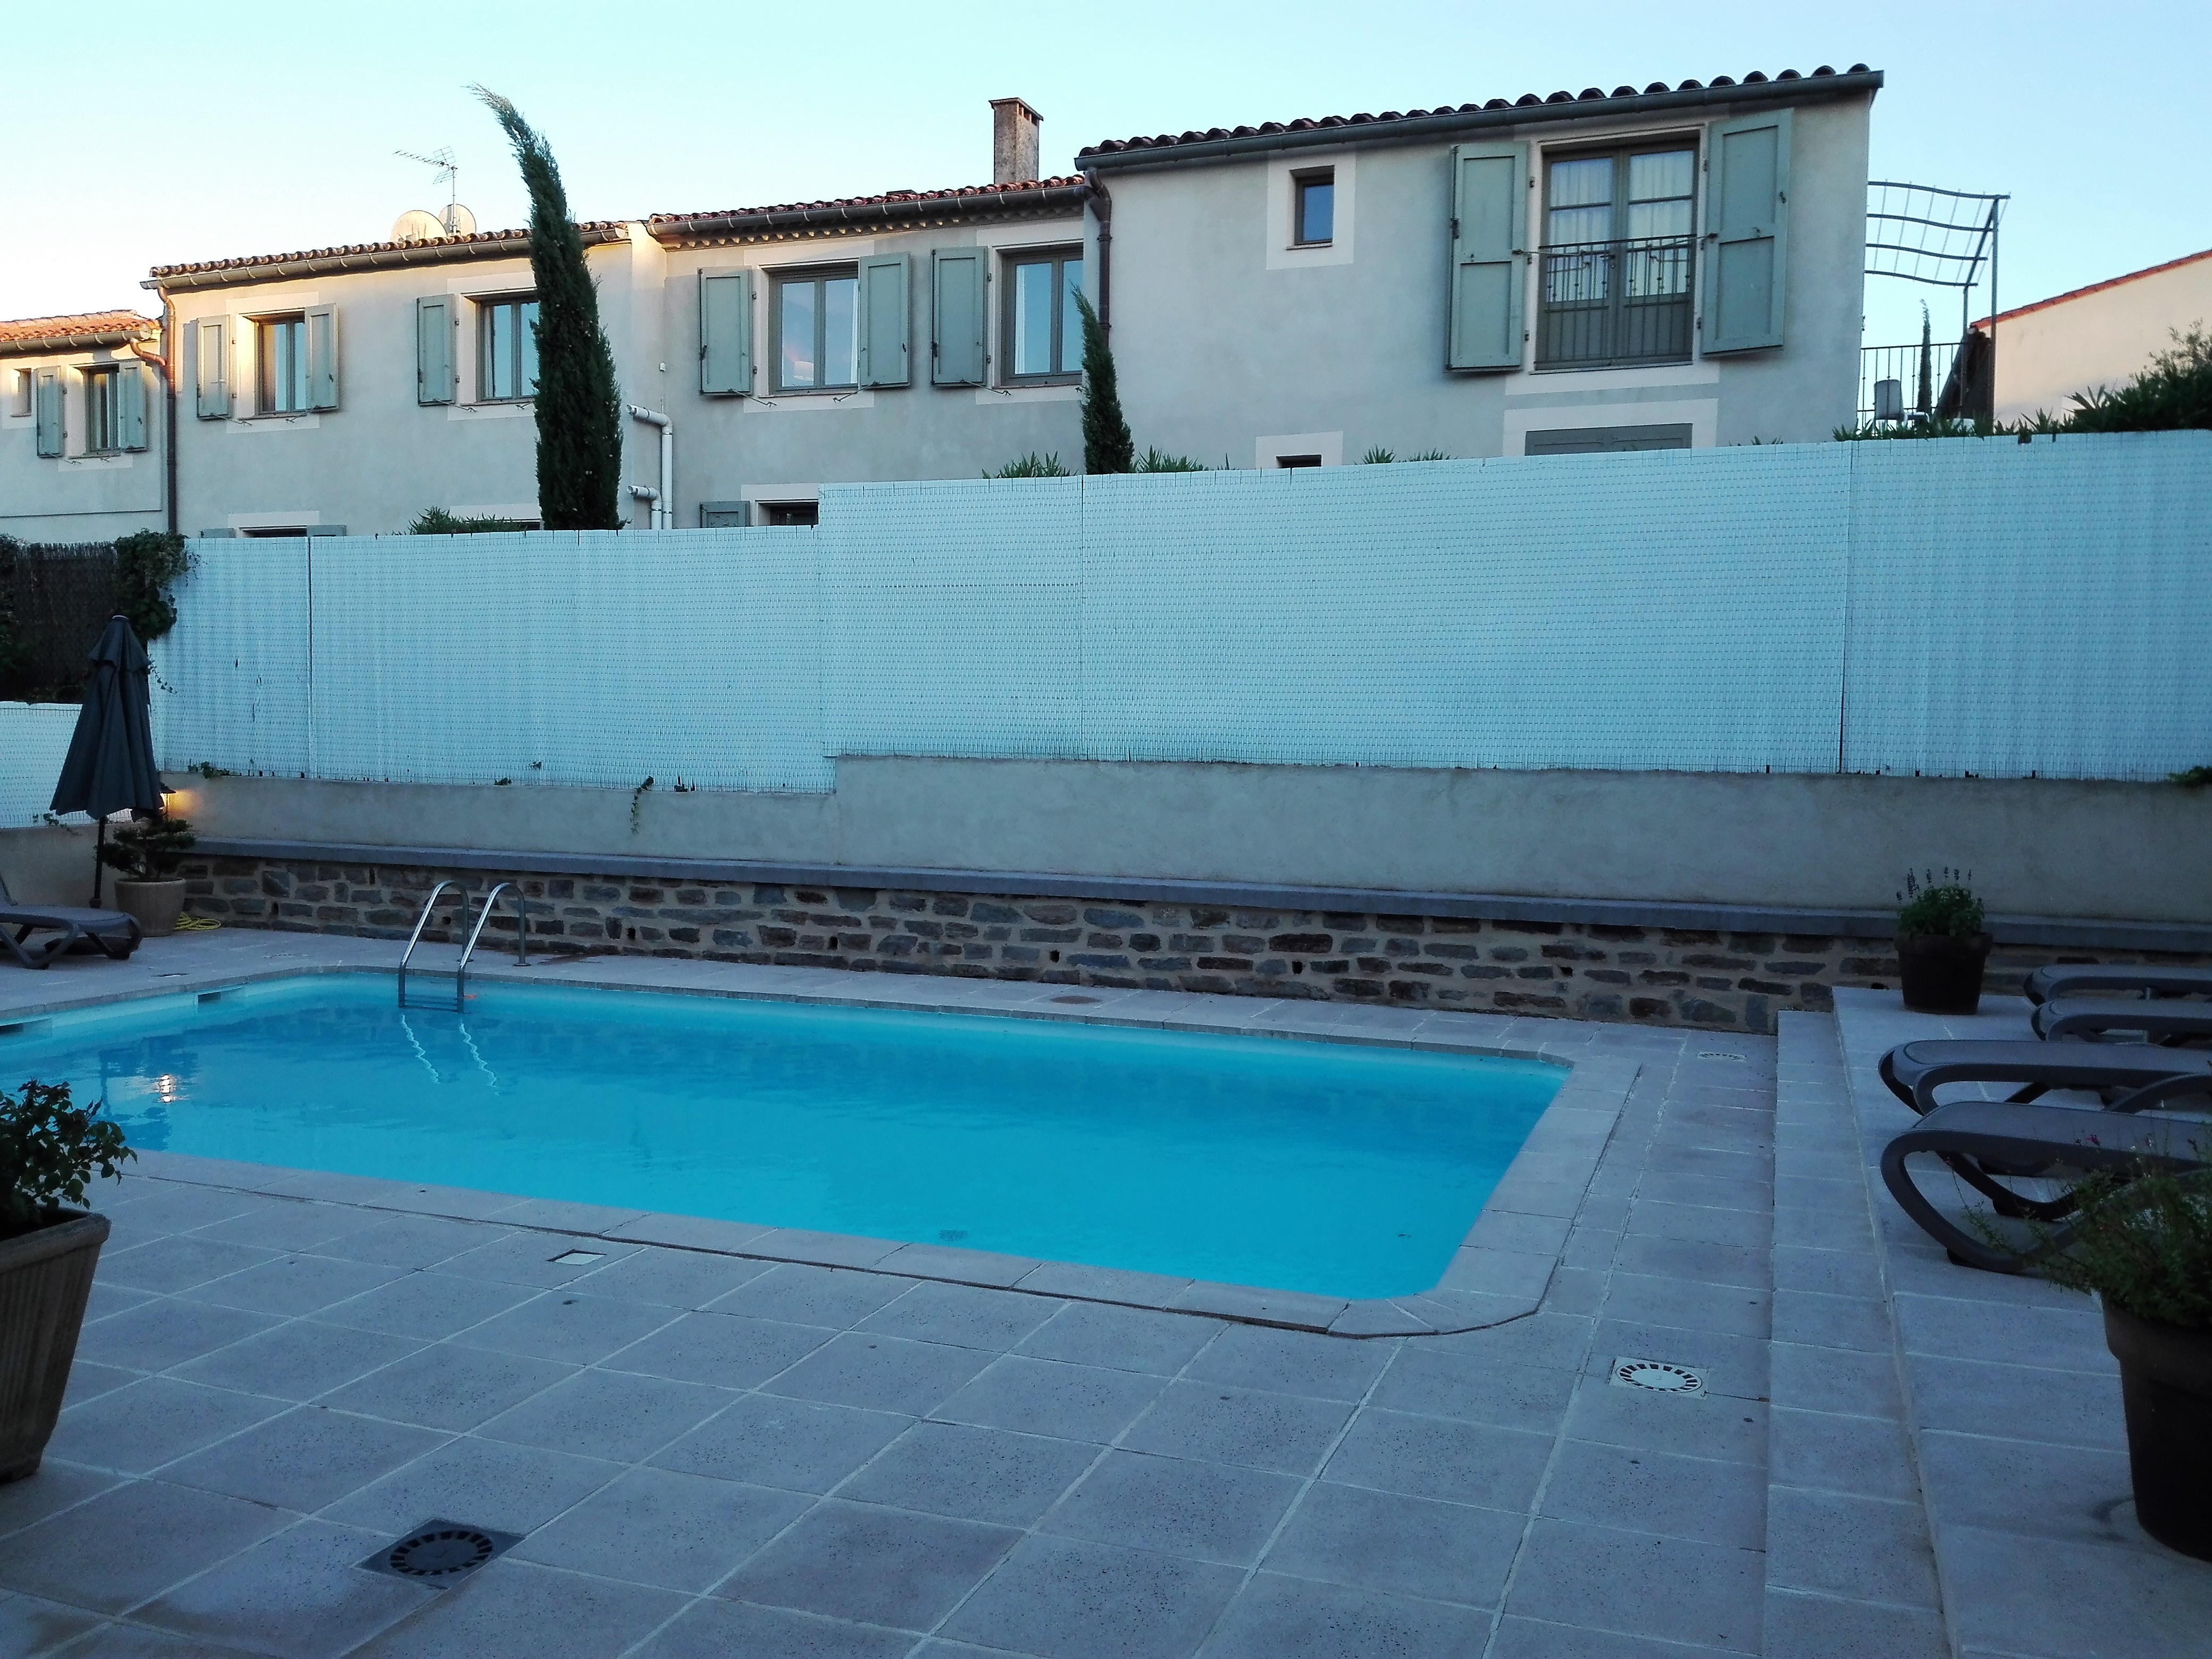 Carcasona-hotel-aragon-donviajon-piscina-calidad-francia